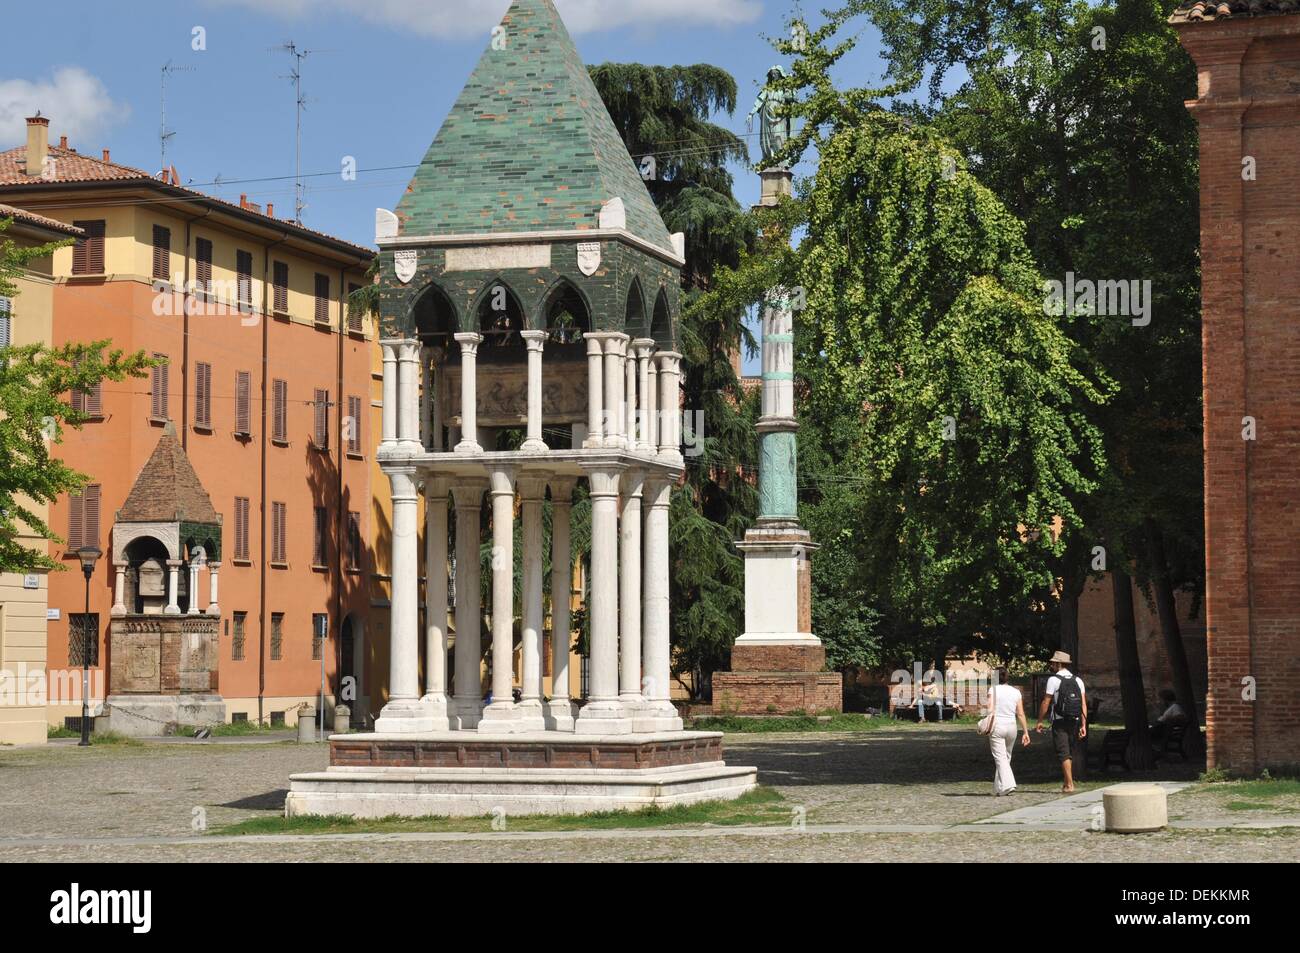 Bologna (Italy): Piazza San Domenico Stock Photo: 60668855 - Alamy